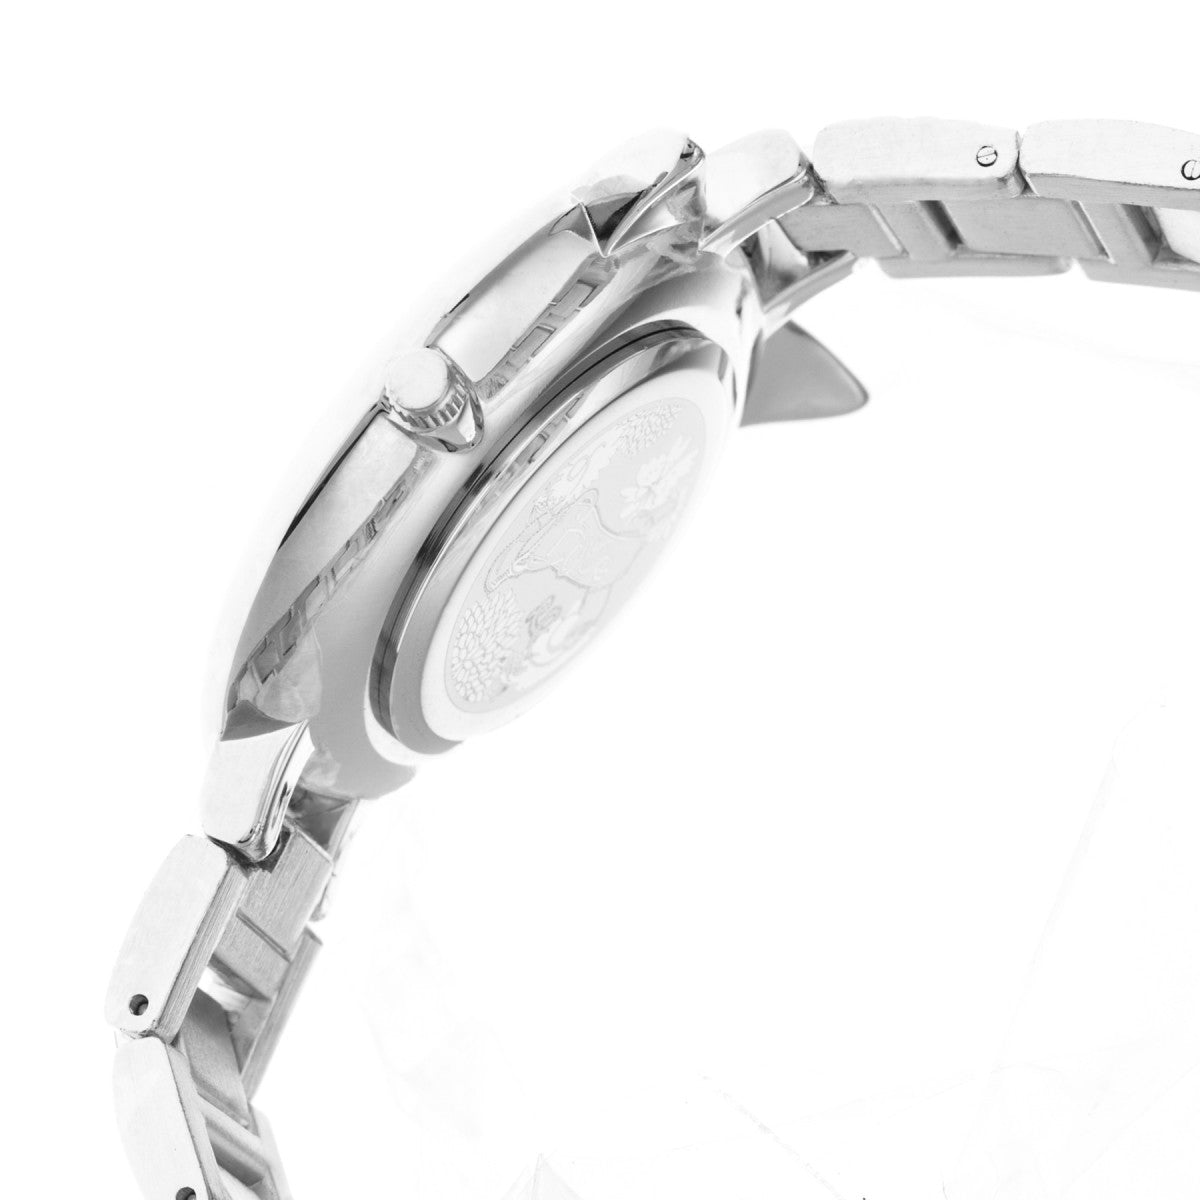 Boum Sagesse Owl-Accented Bracelet Watch - Silver - BOUBM3601